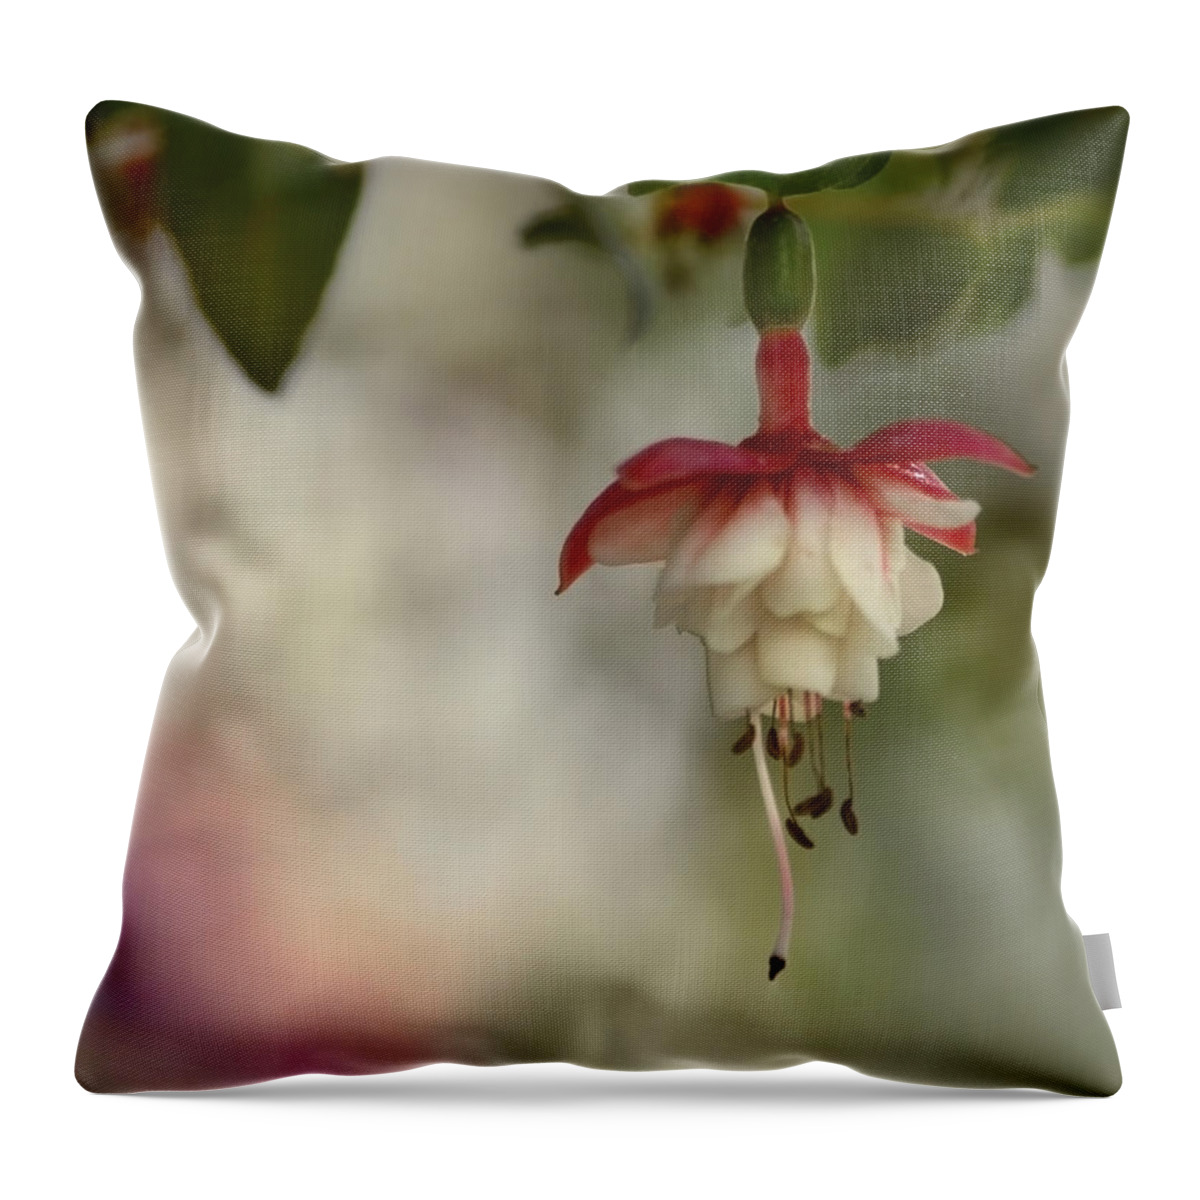 Fuchsia Throw Pillow featuring the photograph Fuchsia Love by Ann Bridges